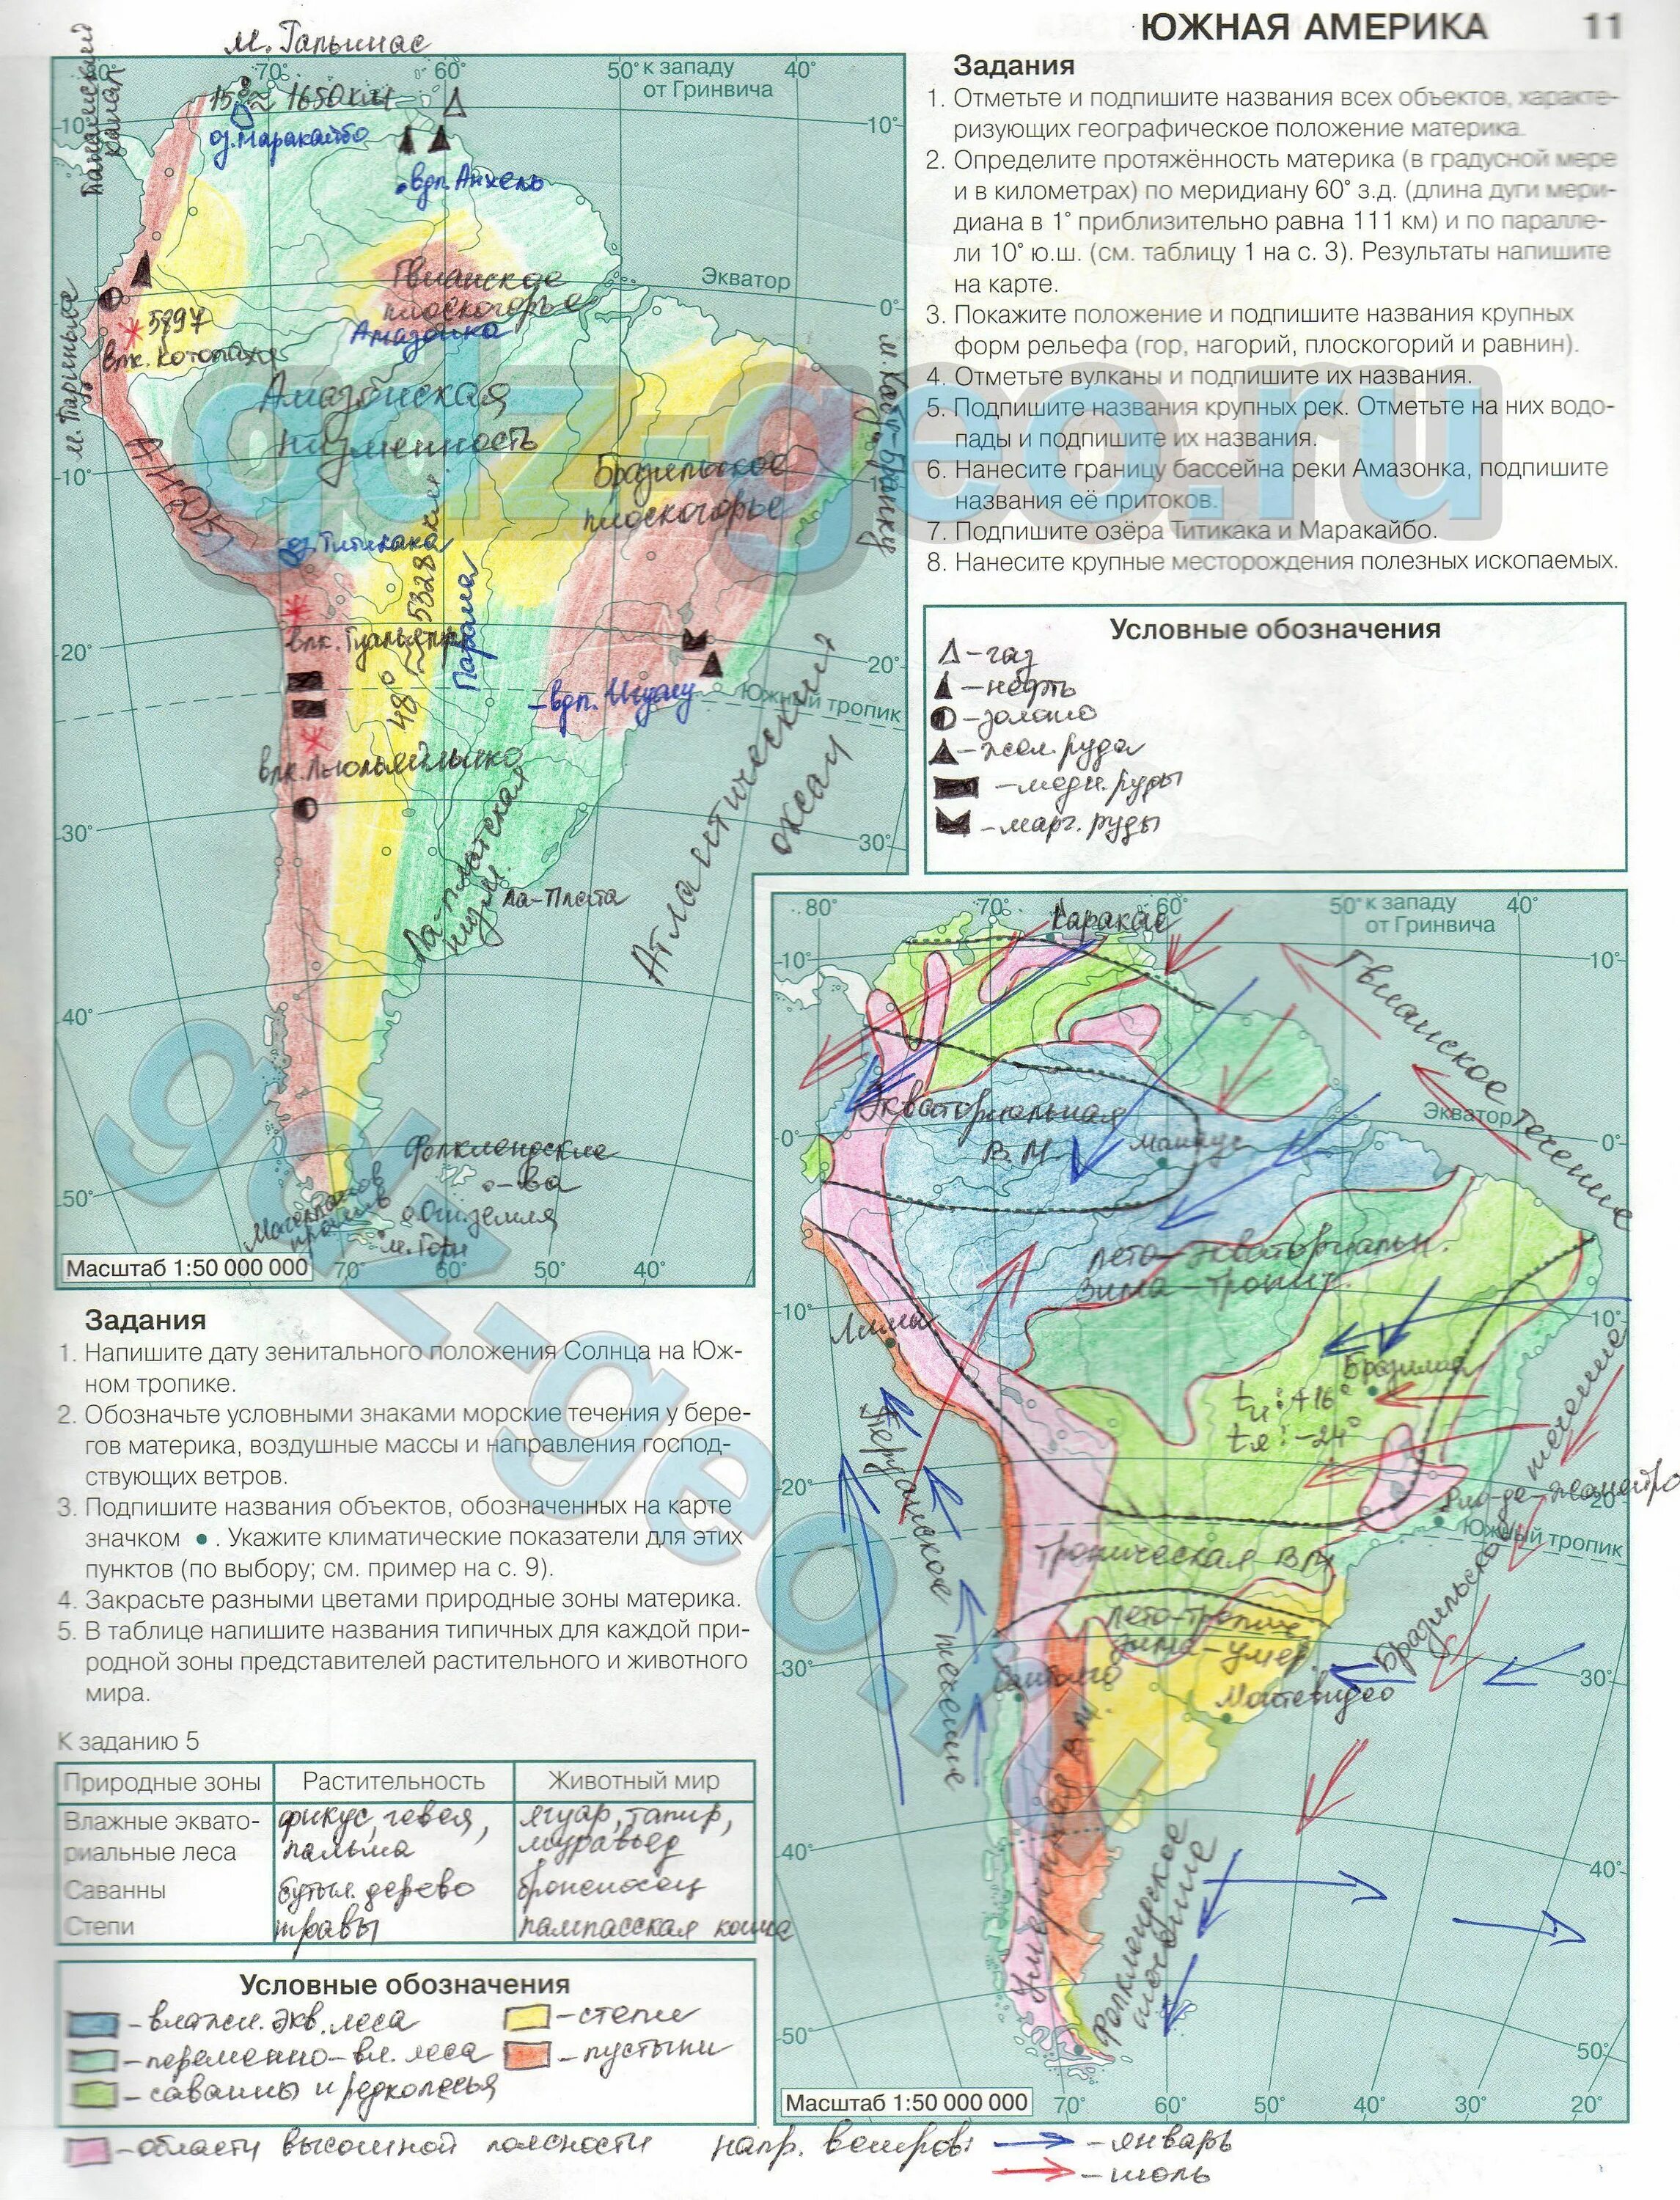 Южная Америка контурная карта 7 класс гдз. География 7 класс контурные карты Южная Америка гдз. Гдз по географии 7 класс контурные карты Южная Америка. Гдз по географии седьмой класс контурные карты Южная Америка. Подпишите на контурной карте южной америки названия